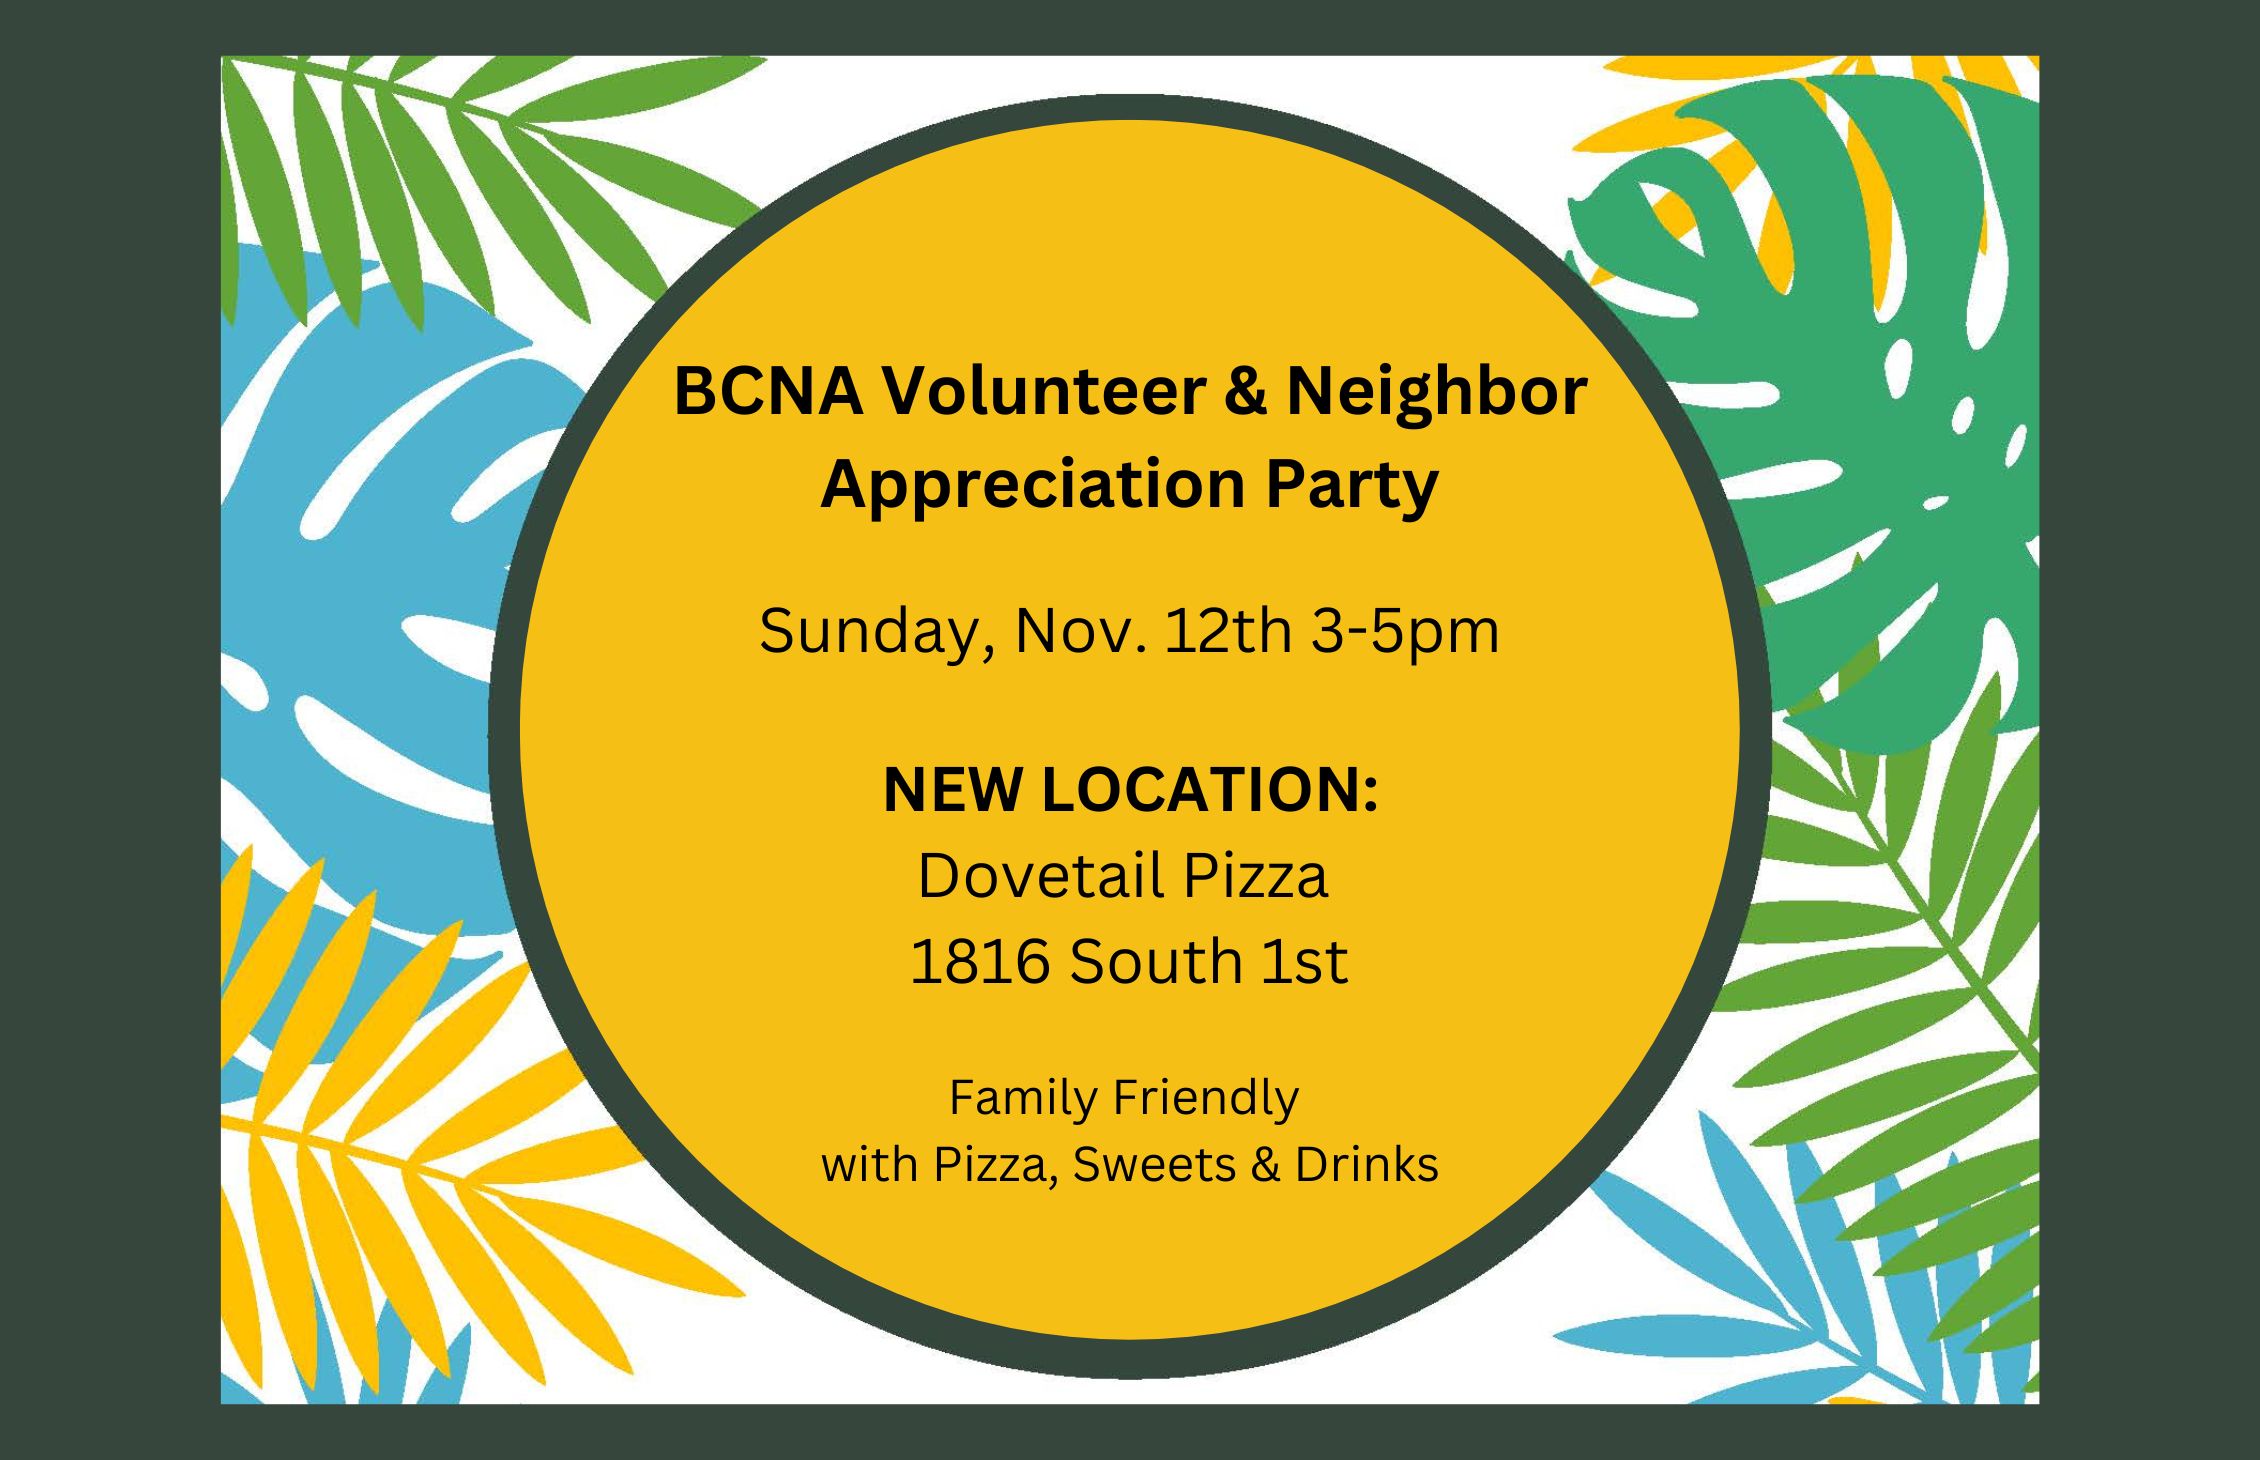 Volunteer & Neighbor Appreciation party: New Location